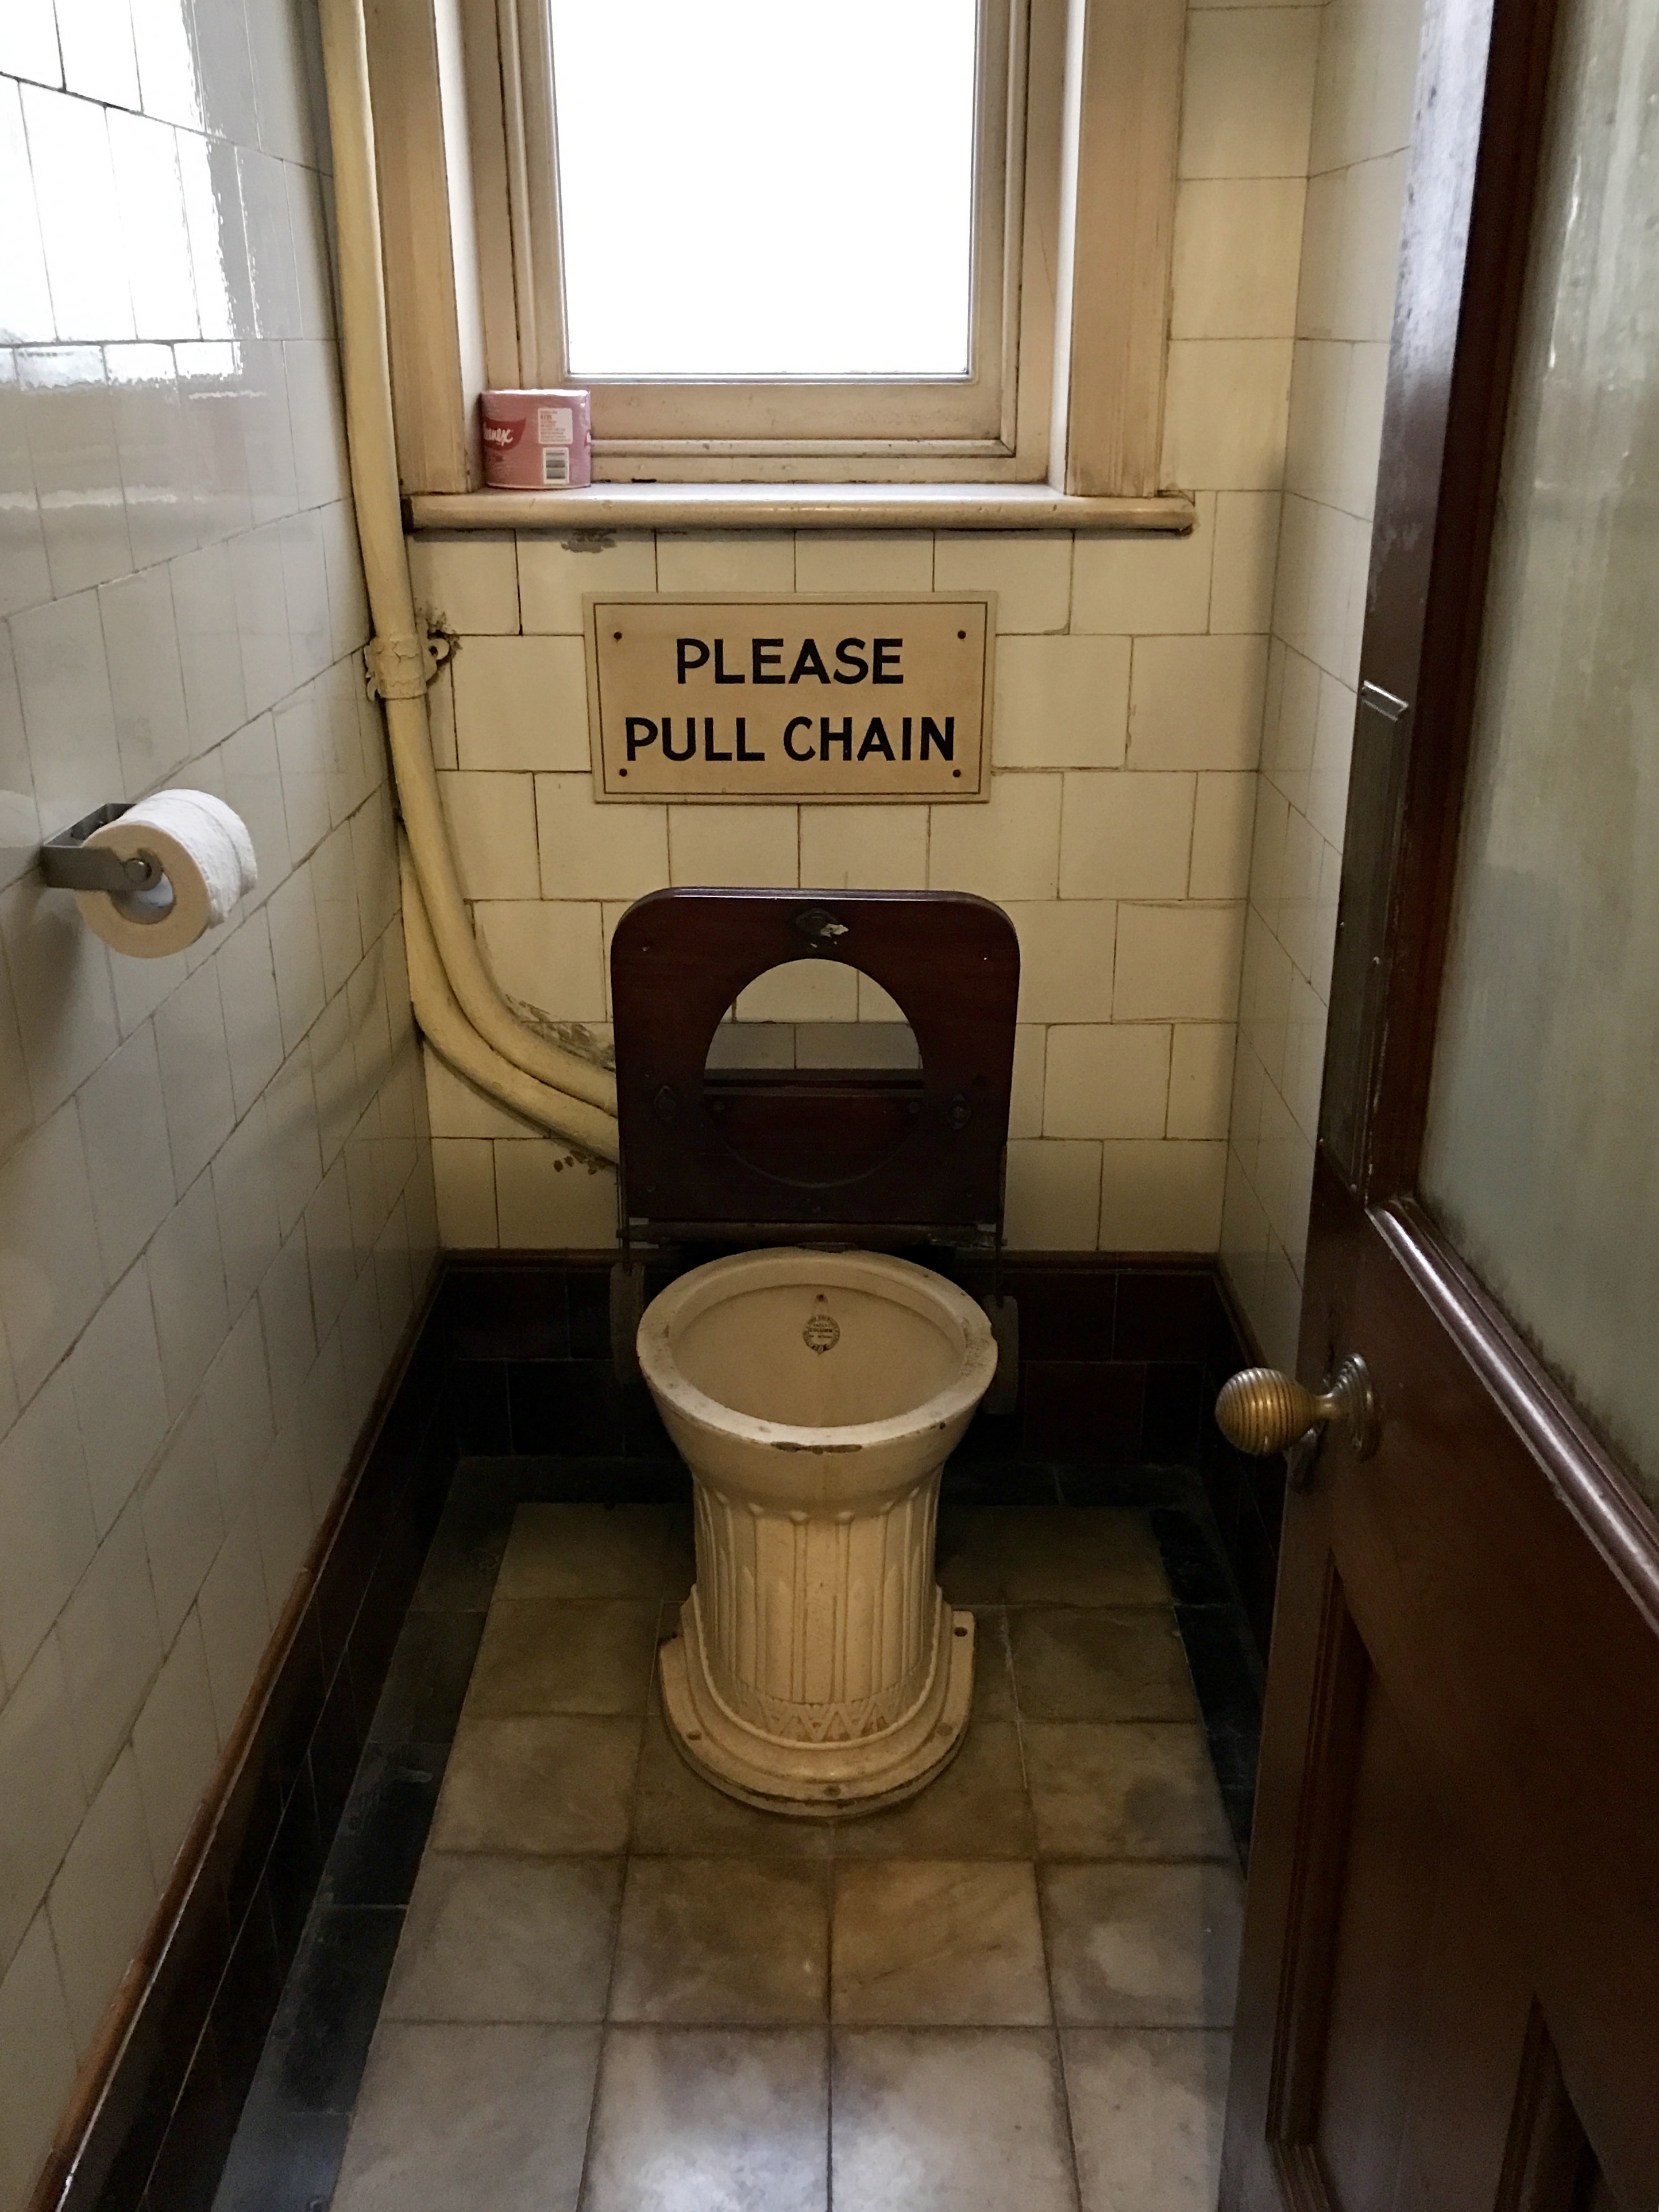 Old toilet photo